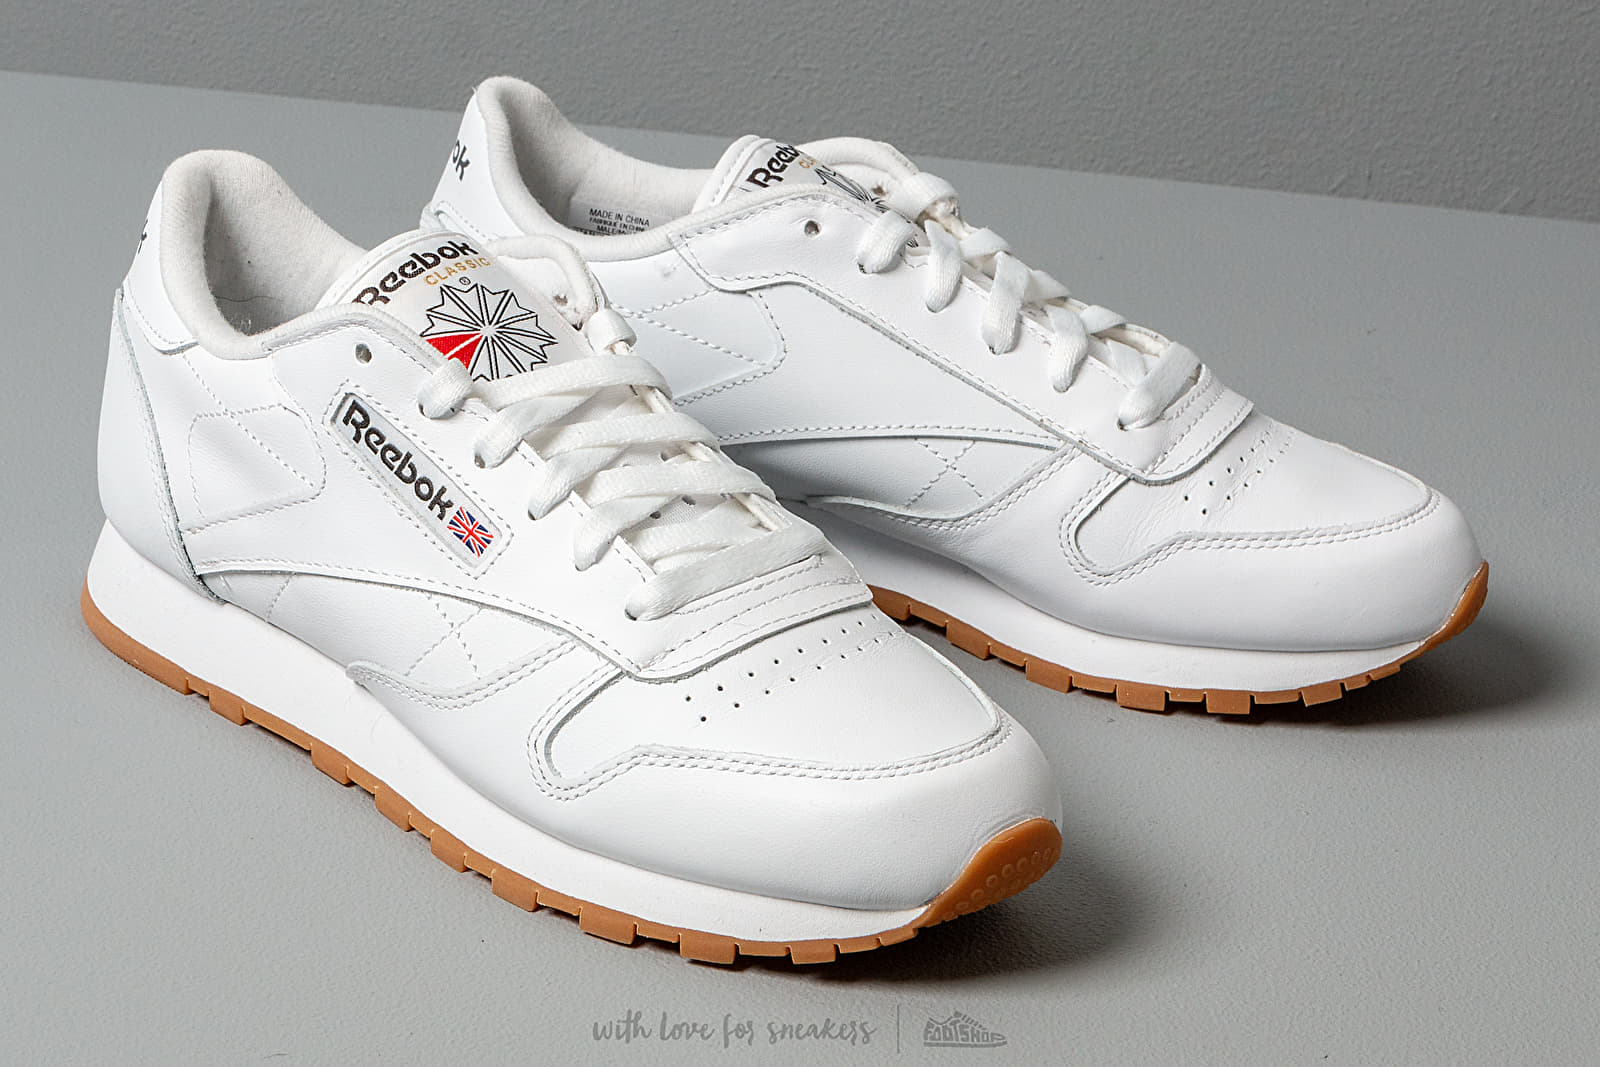 Herren Sneaker und Schuhe Reebok Classic Leather White/ Gum | Footshop